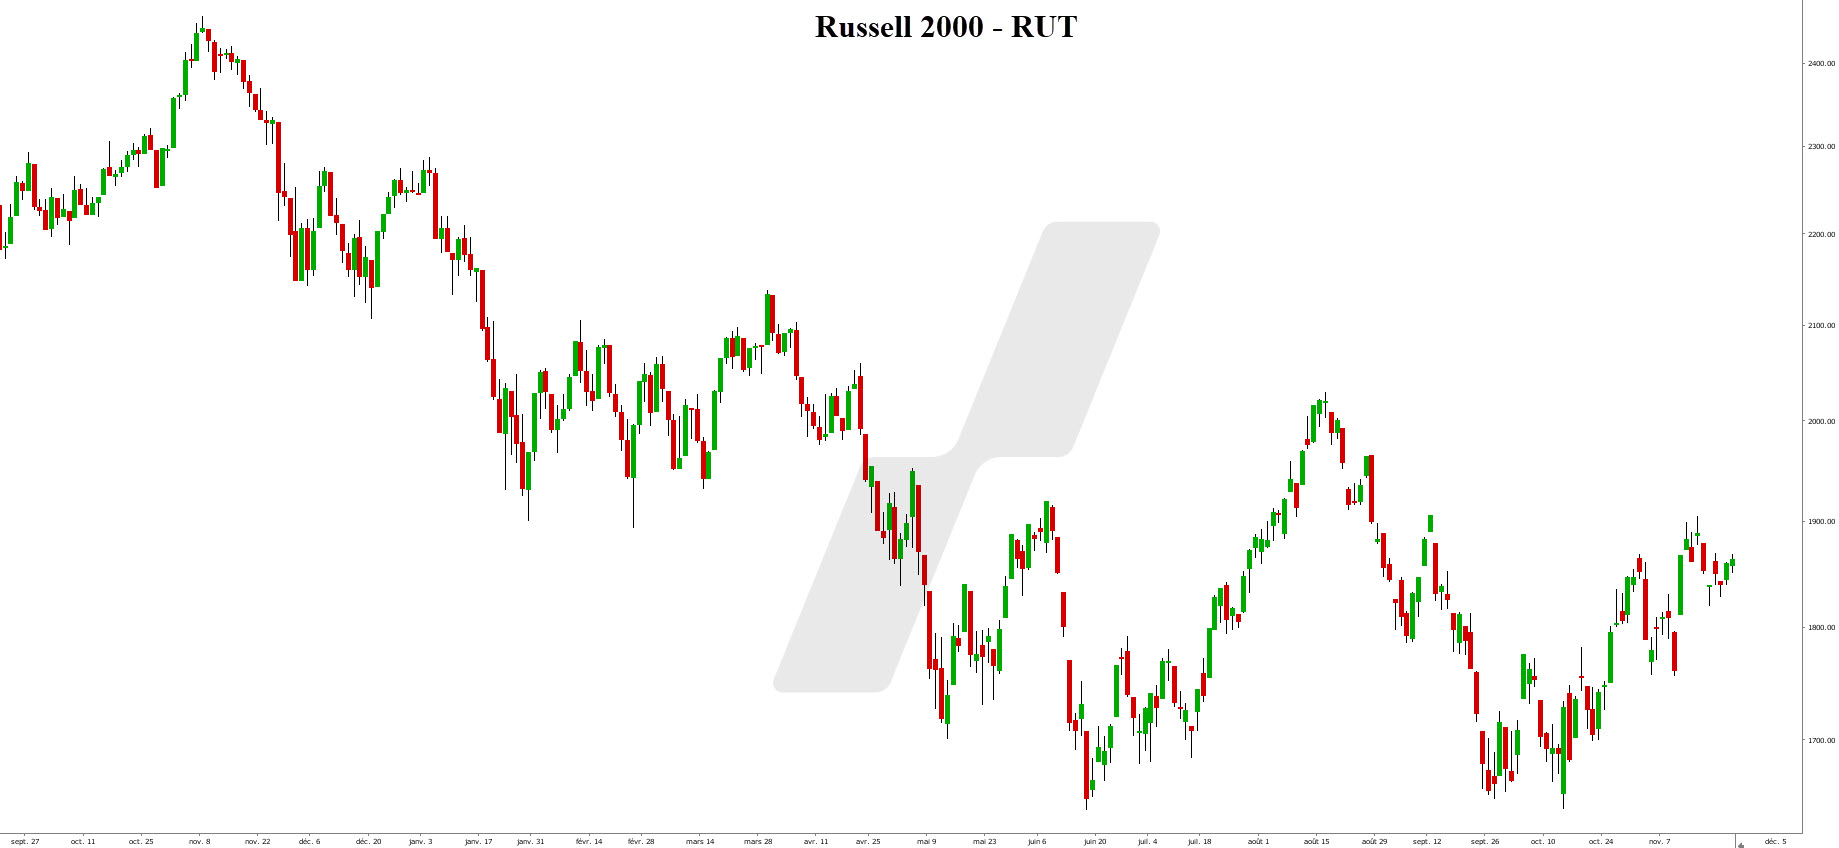 market cap - capitalisation boursière - Russell 2000